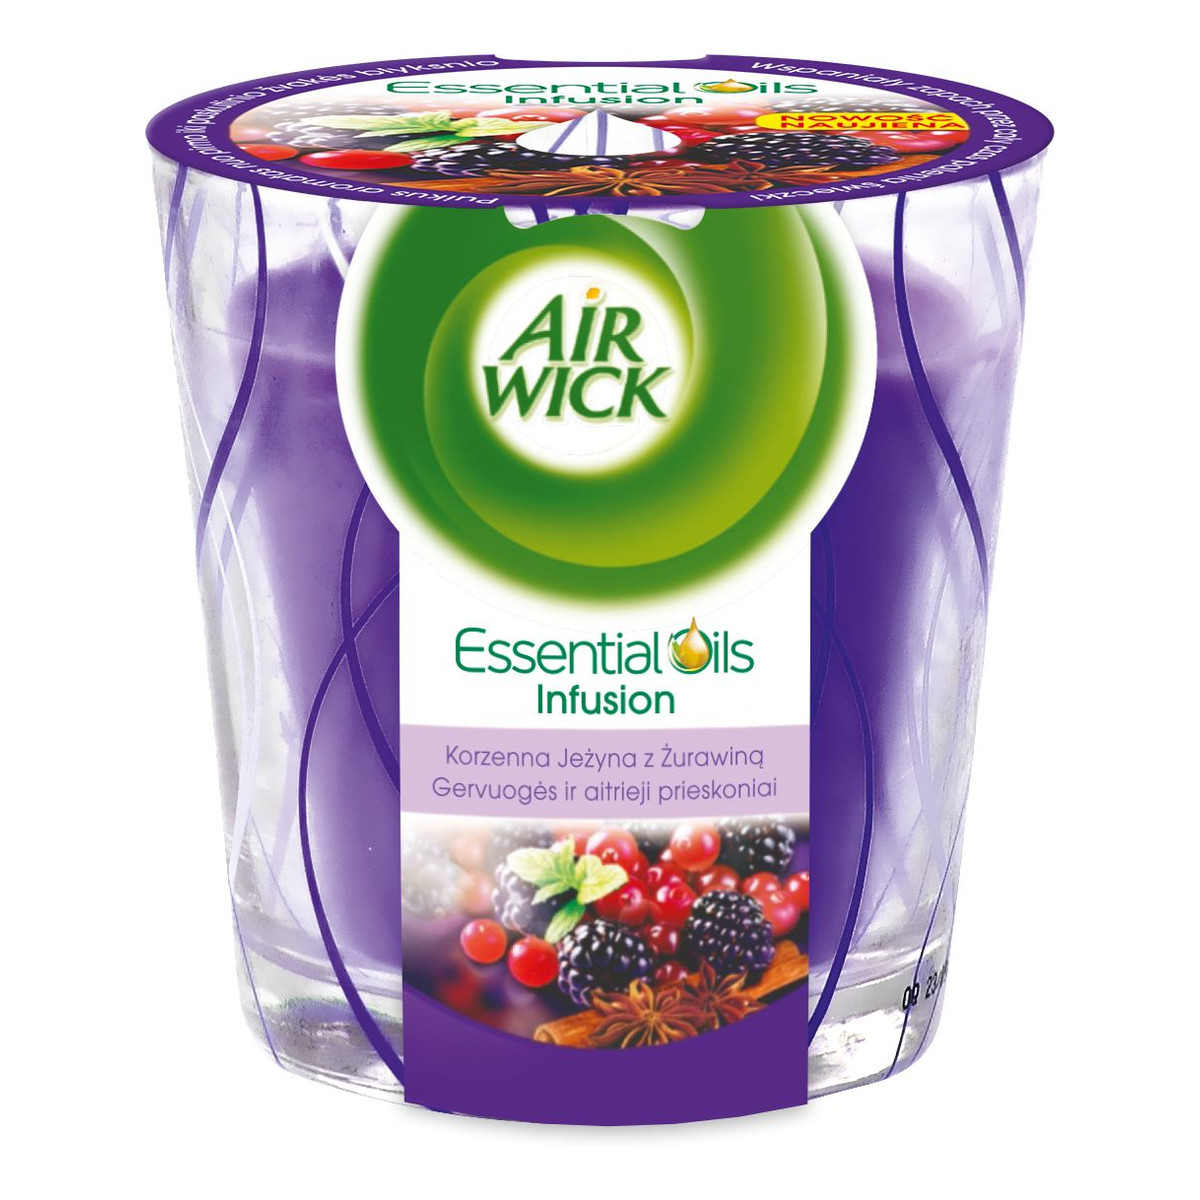 Air Wick Essential Oils Infusion świeczka zapachowa Korzenna Jeżyna z Żurawiną 105g